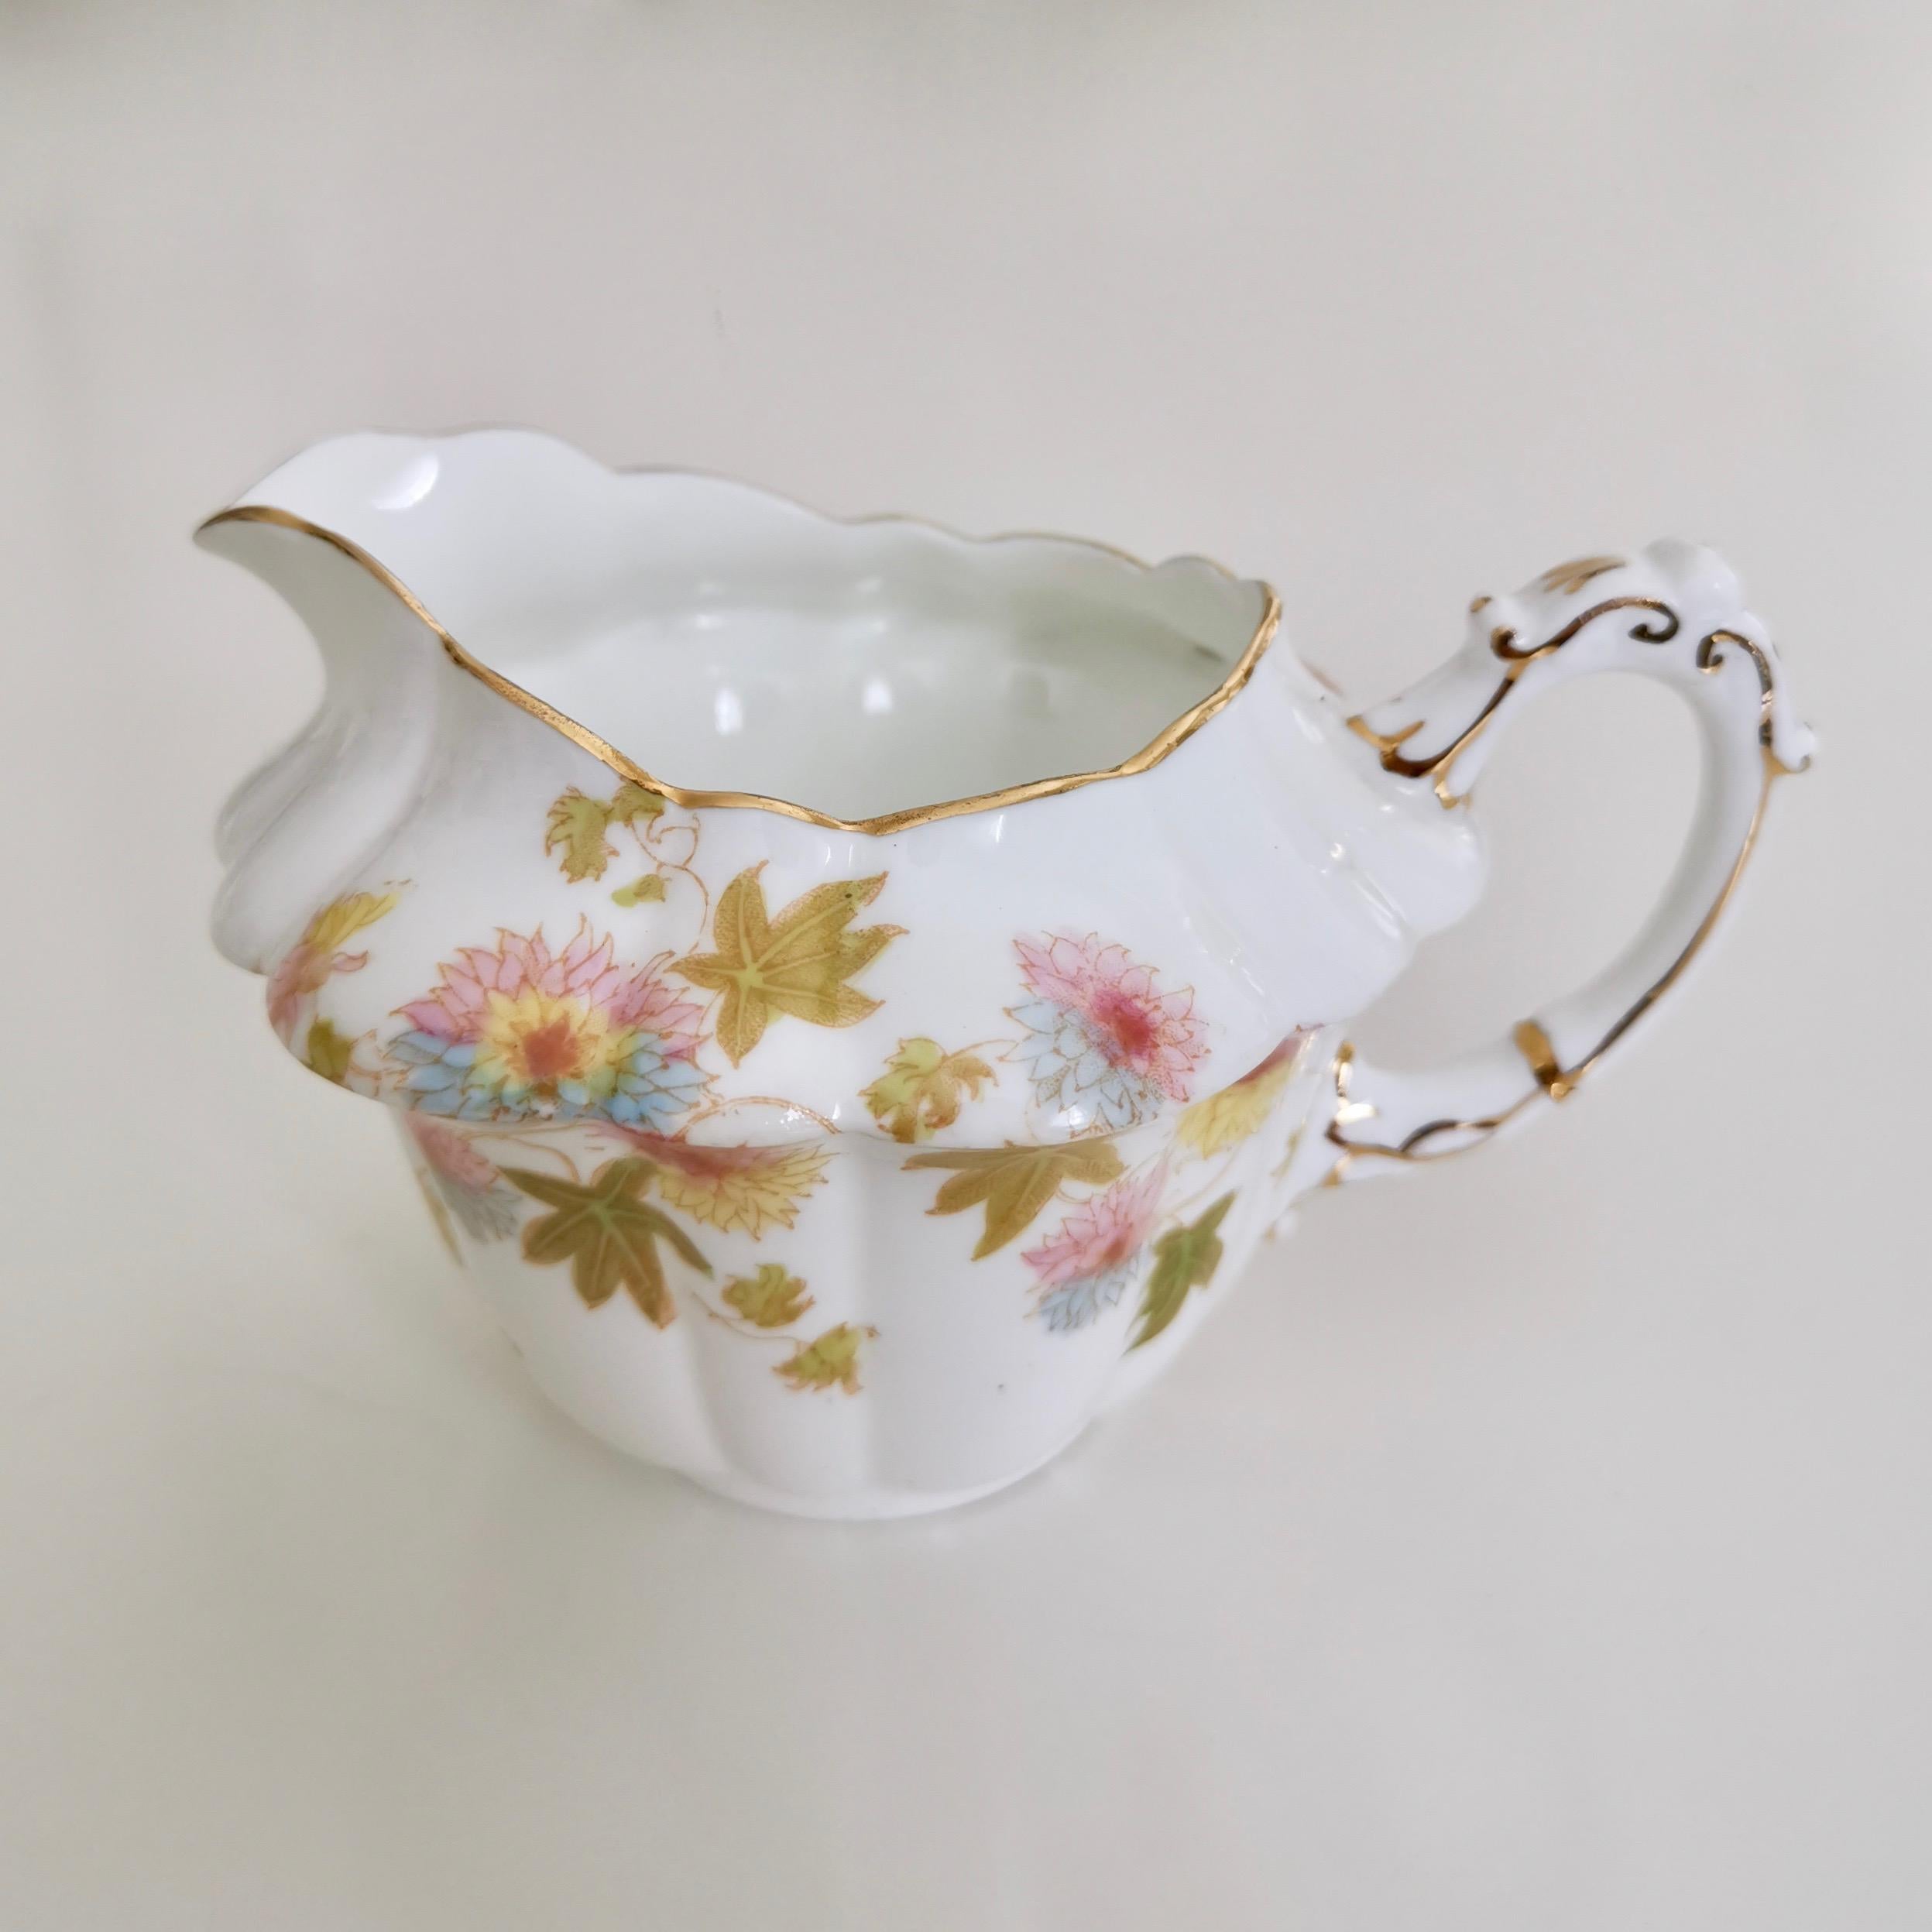 Wileman Porcelain Tea Set, Chrysanthemum, Pastel Colors, Art Nouveau, 1896 4